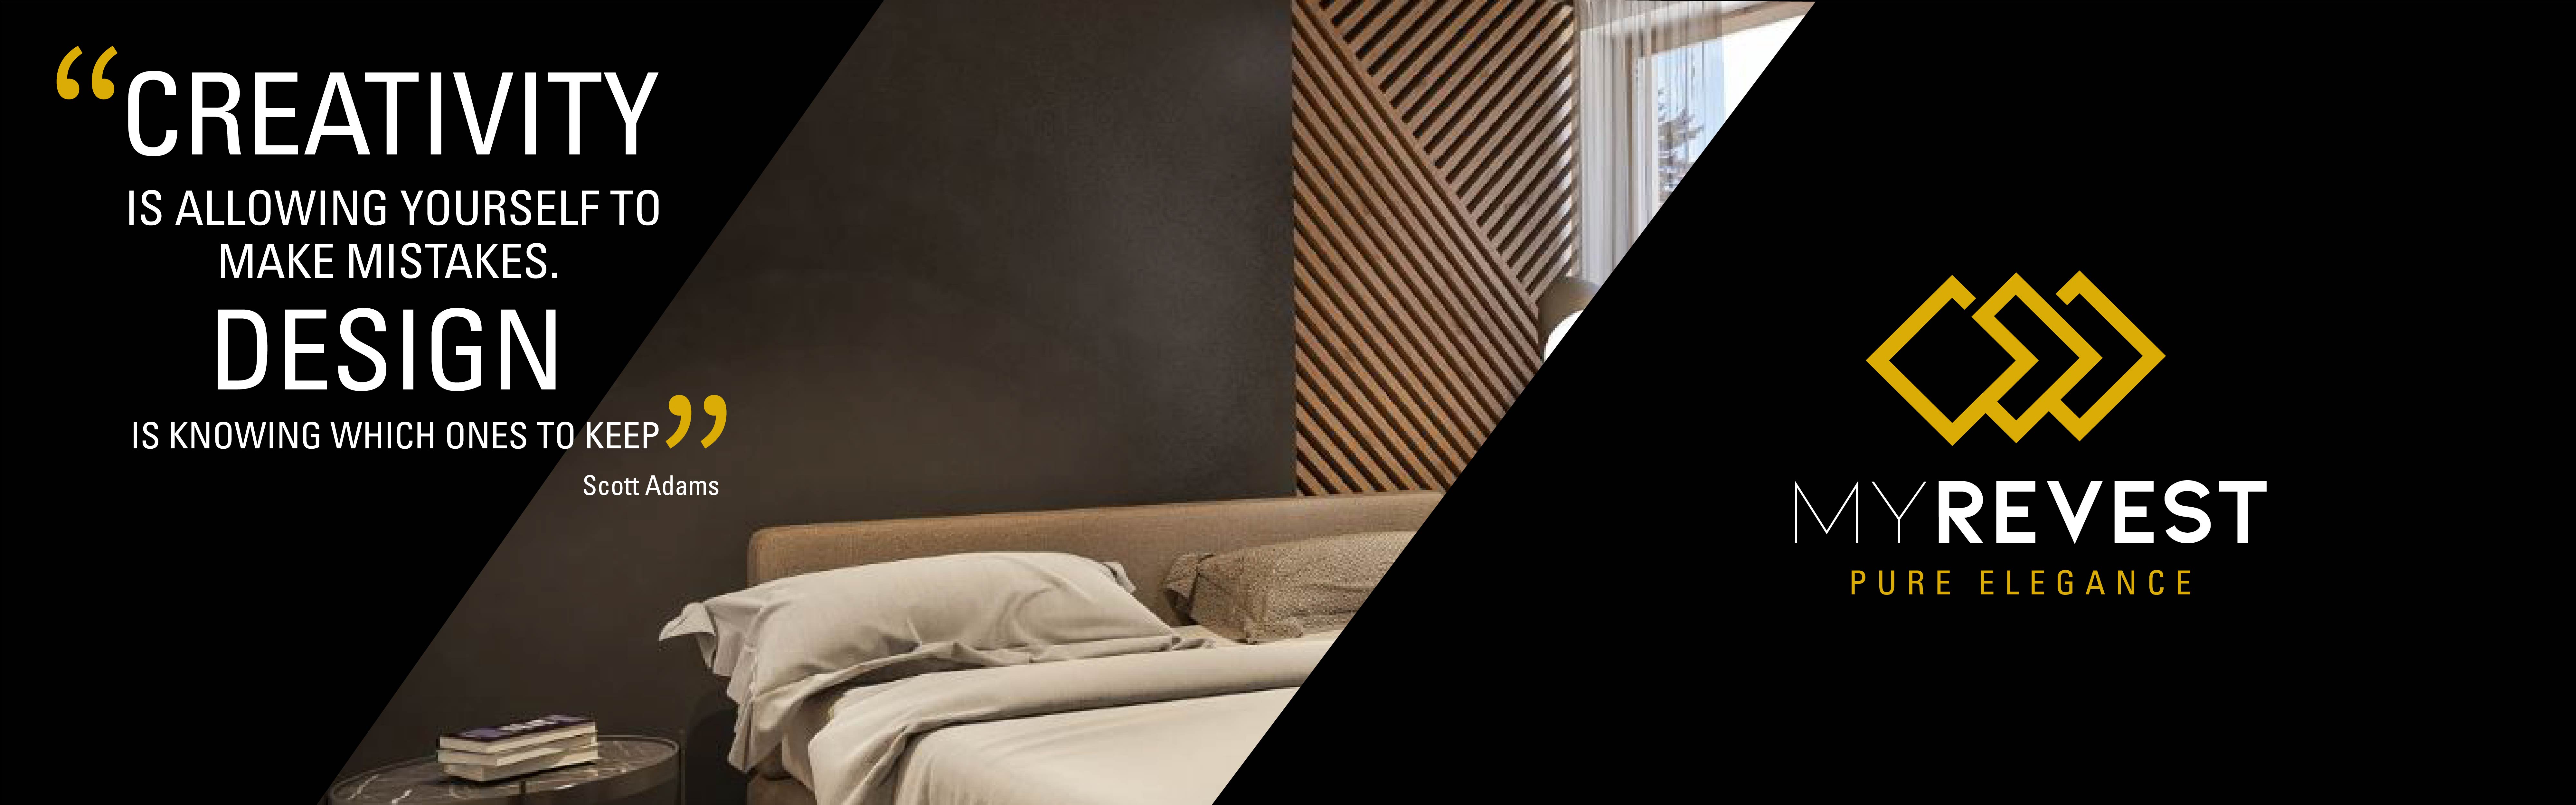 Rivestimento di microcemento sulla parete di una camera da letto in stile minimalista accanto al logo di MyRevest